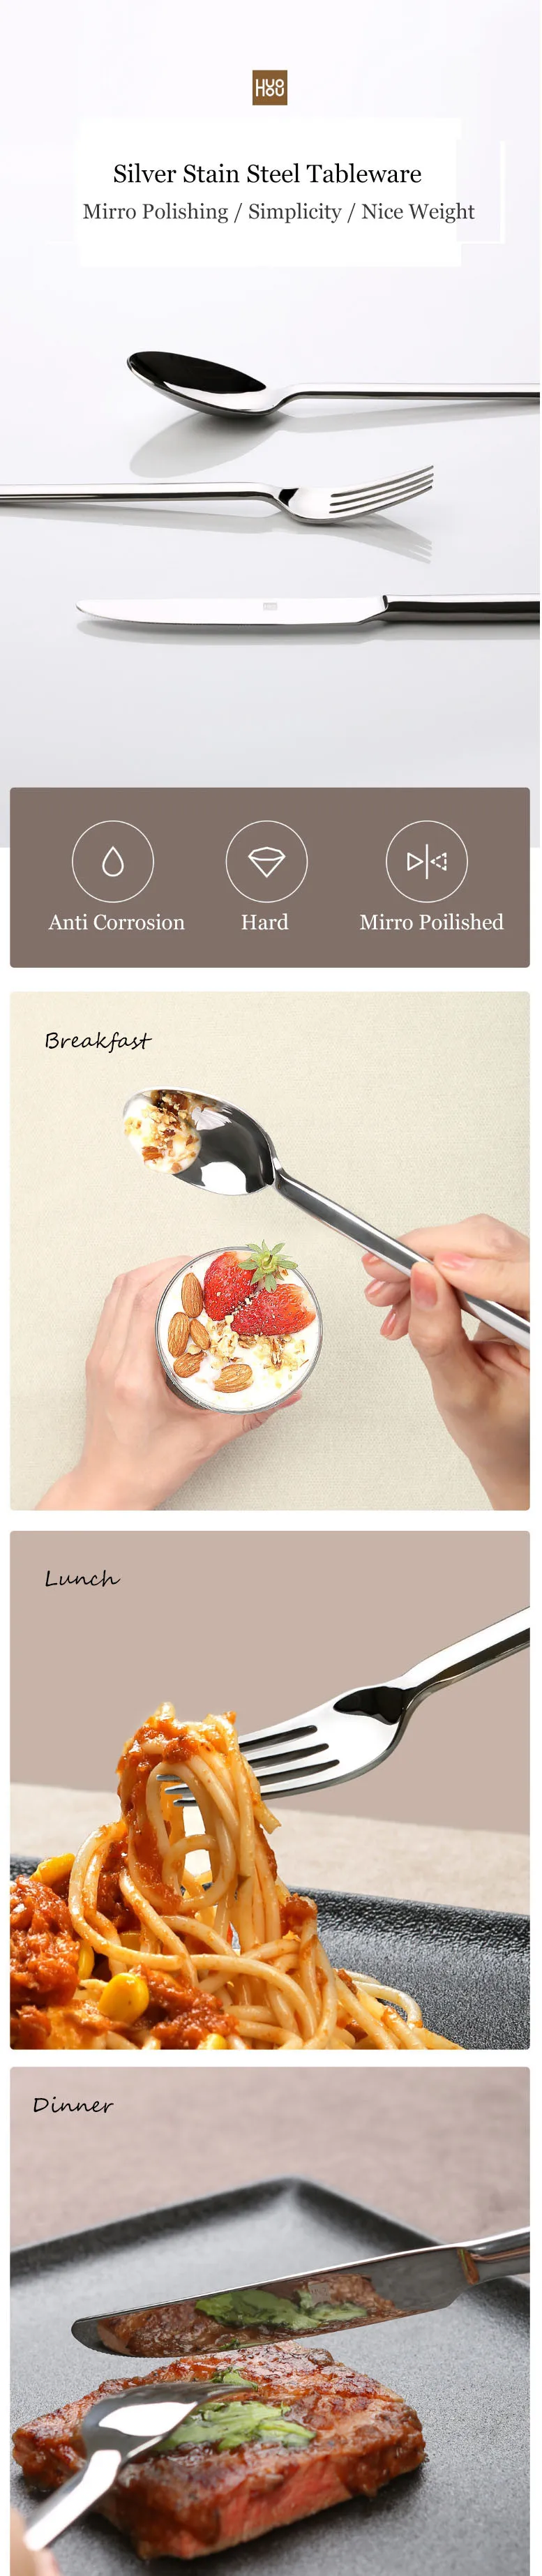 Оригинальная посуда Xiaomi Mijia Huohou, нож для стейка, ложка, вилка, столовая посуда из нержавеющей стали, набор столовых приборов для семьи